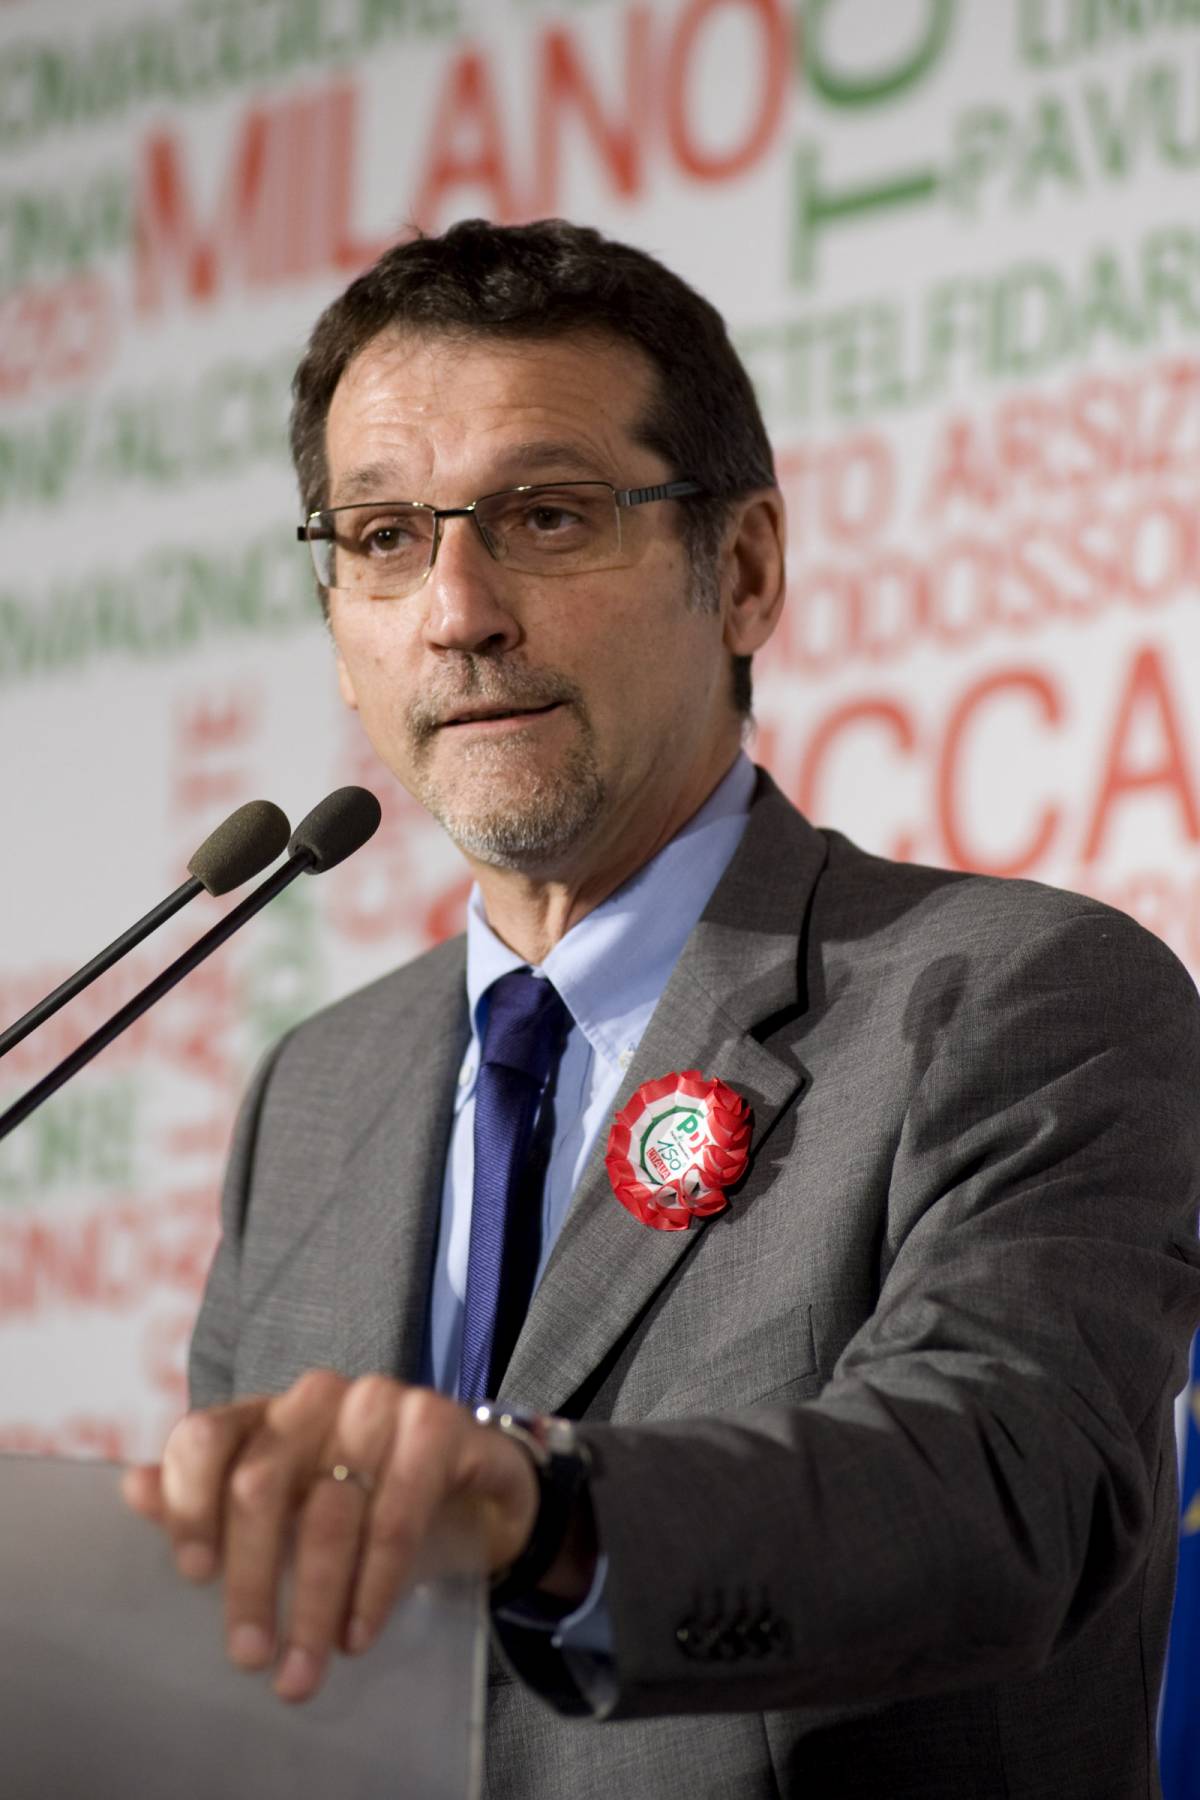 Caos a Bologna, Merola: 
"Mi fumavo gli spinelli" 
E Prodi lo scarica subito